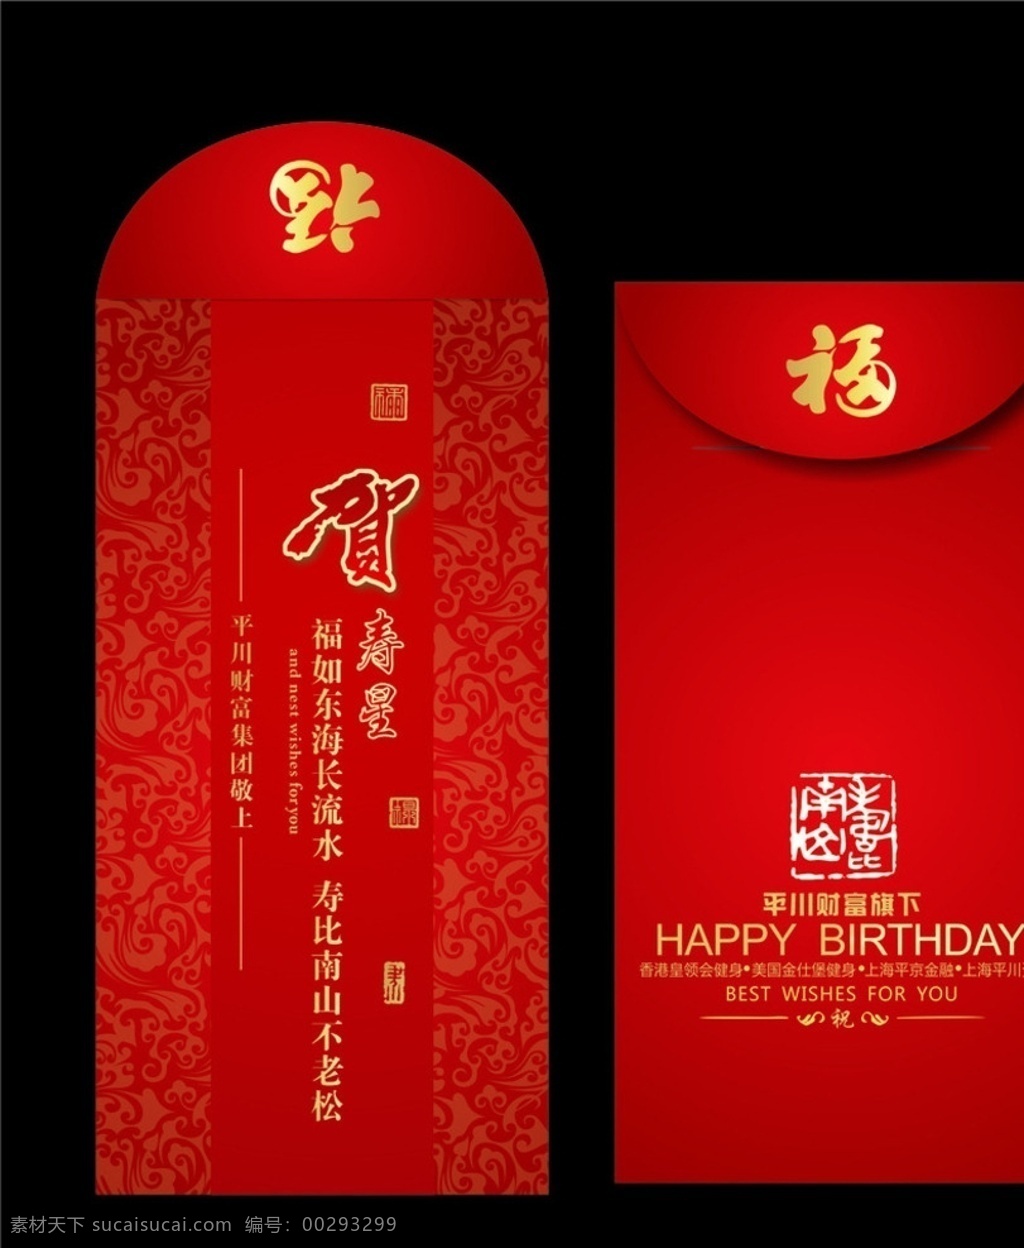 红包袋 新年恭贺卡 结婚邀请袋 祝寿红包 生日红包 包装设计